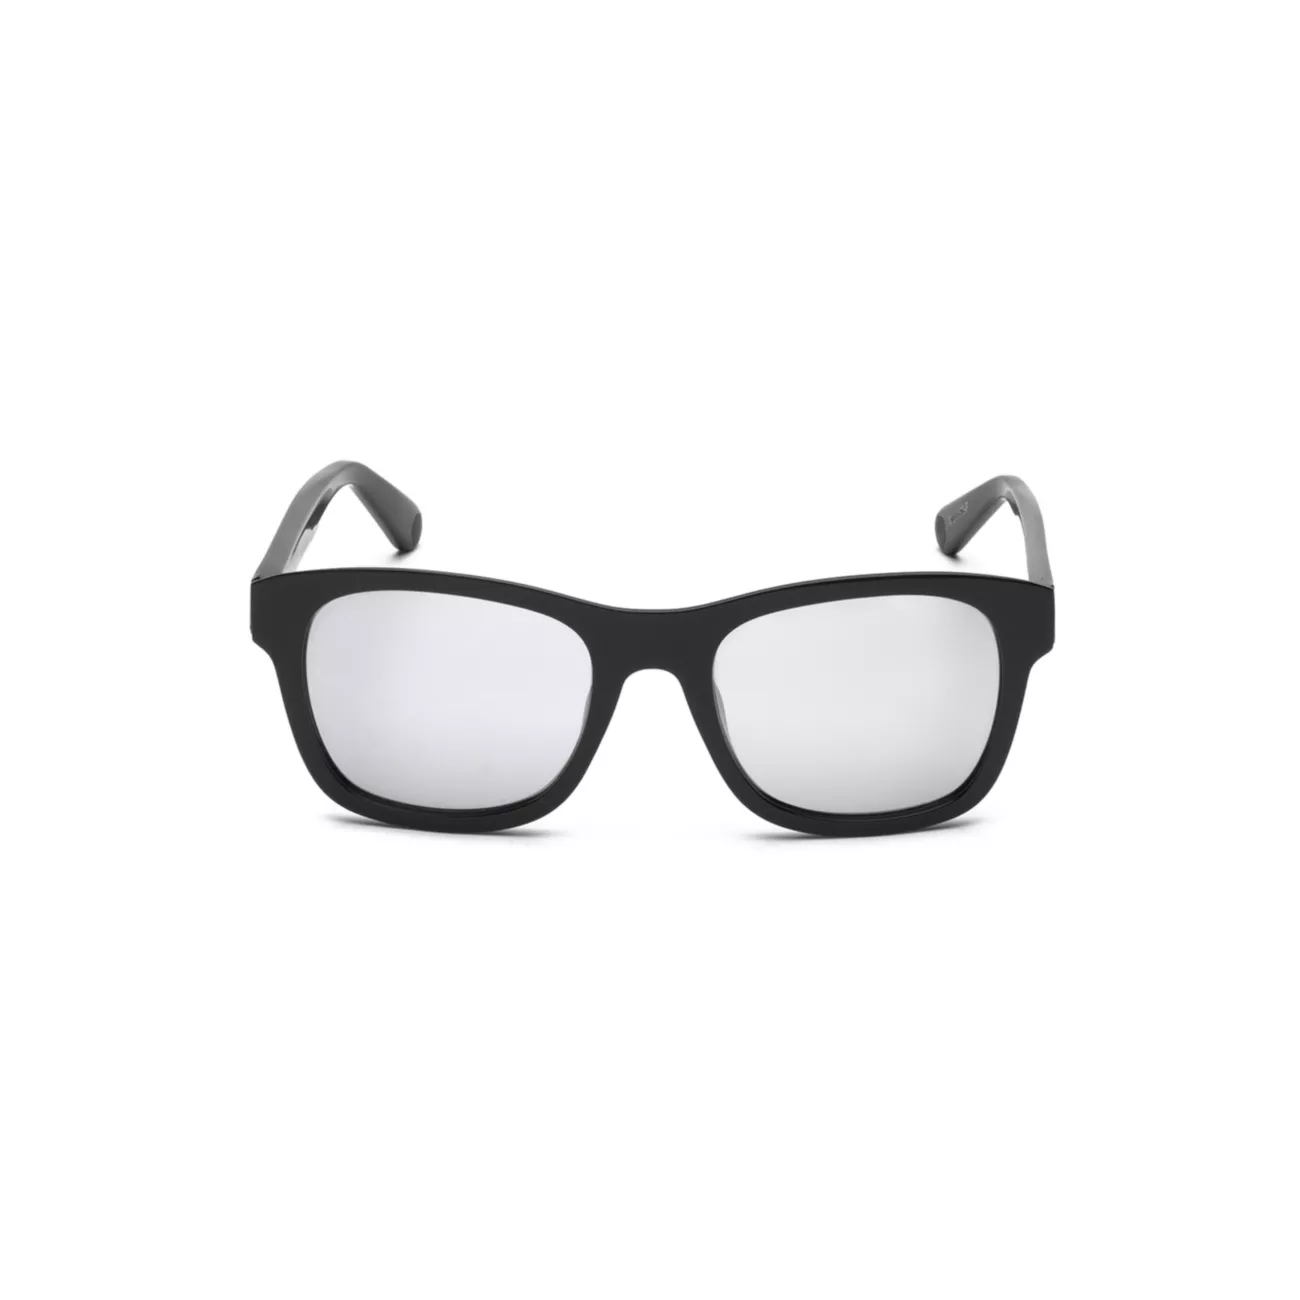 7 Квадратные солнцезащитные очки Moncler FRGMT Moncler Genius